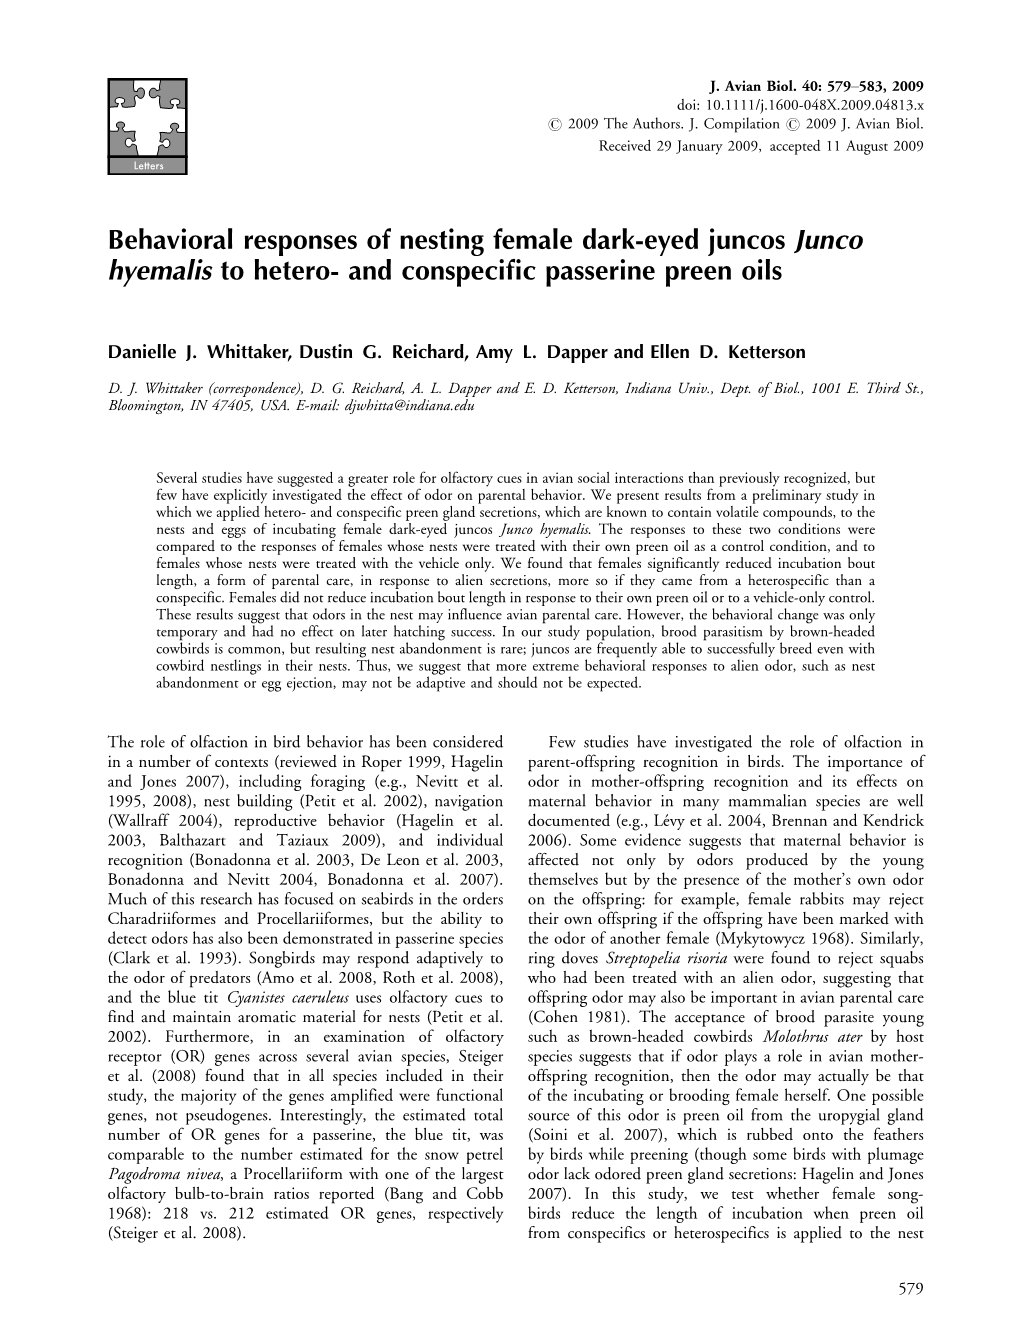 Behavioral Responses of Nesting Female Dark-Eyed Juncos Junco Hyemalis to Hetero- and Conspeciﬁc Passerine Preen Oils